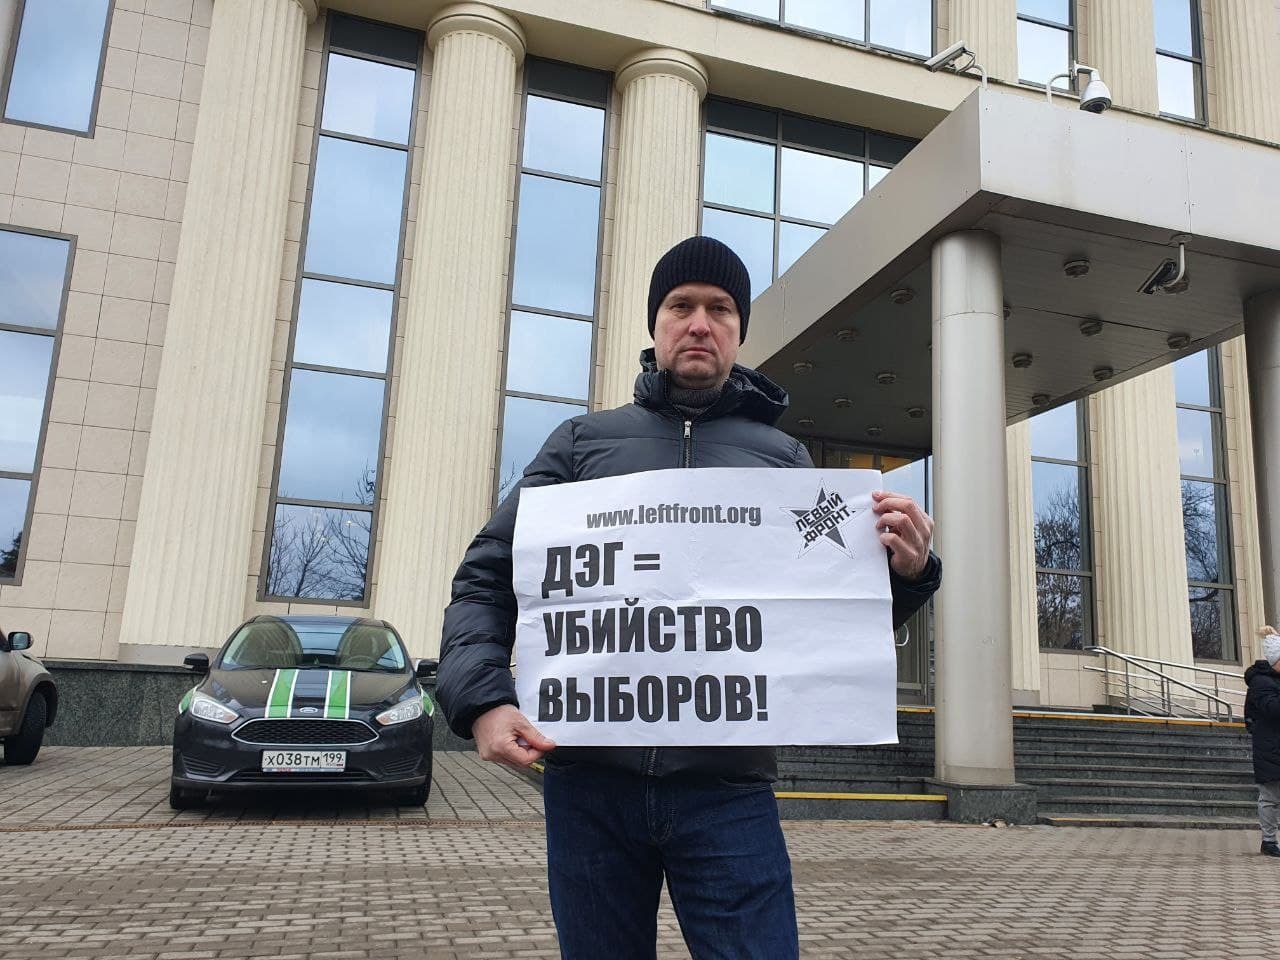 Мосгорсуд оправдал Леонида Развозжаева, получившего в сентябре прошлого года 10 суток ареста за «репост призыва на несанкционированную акцию» по итогам выборов в Госдуму